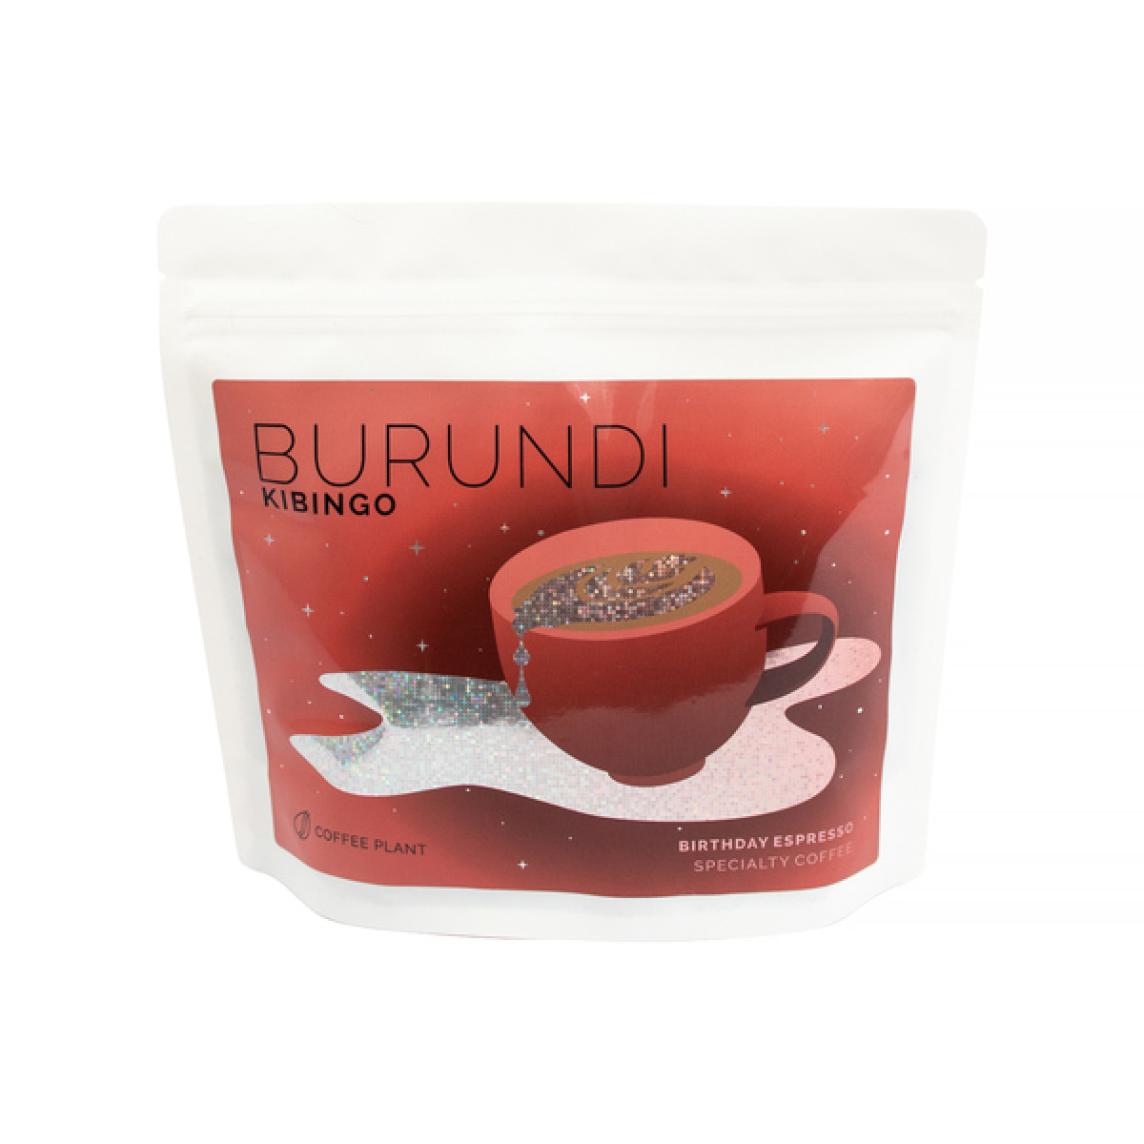 COFFEE PLANT - Burundi Kibingo